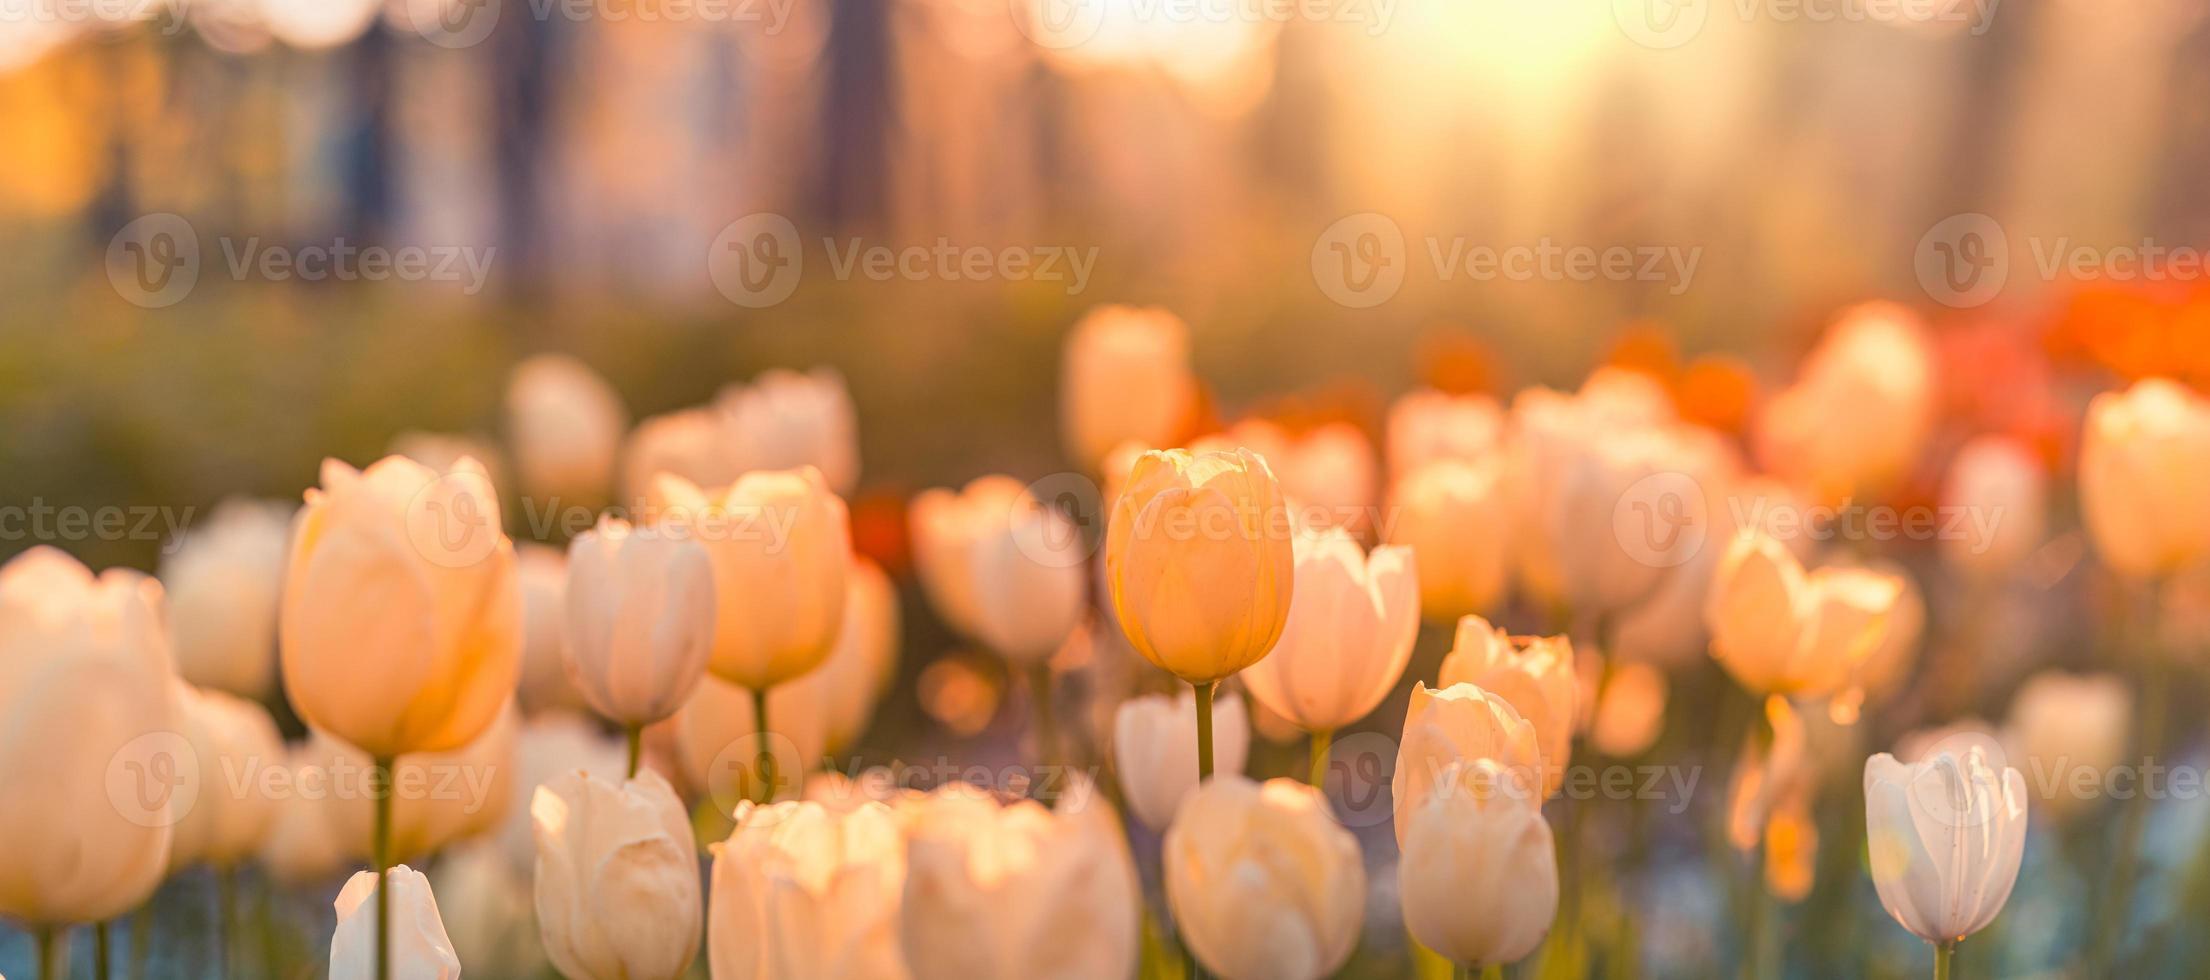 hermosos tulipanes coloridos en el paisaje de naturaleza soleada de primavera borrosa. panorama de flores de tulipanes florecientes brillantes para el concepto de amor de la naturaleza primaveral. asombrosa escena de manantial natural, diseño, estandarte floral tranquilo foto